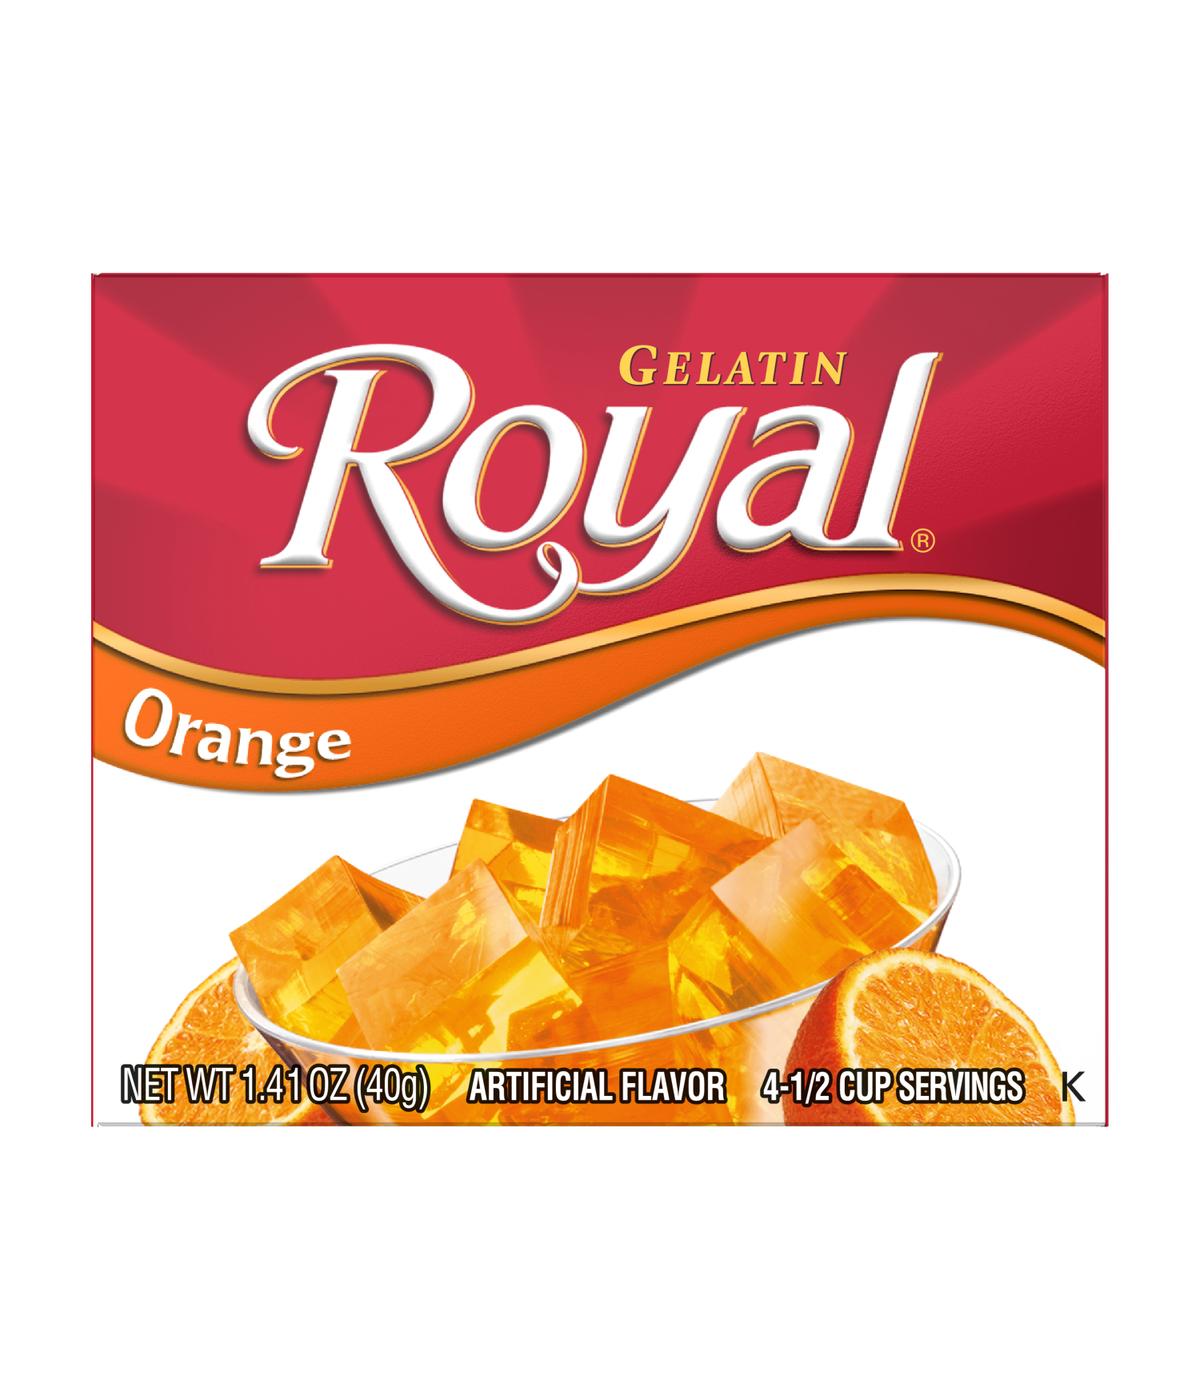 Royal Gelatin - Orange; image 1 of 3